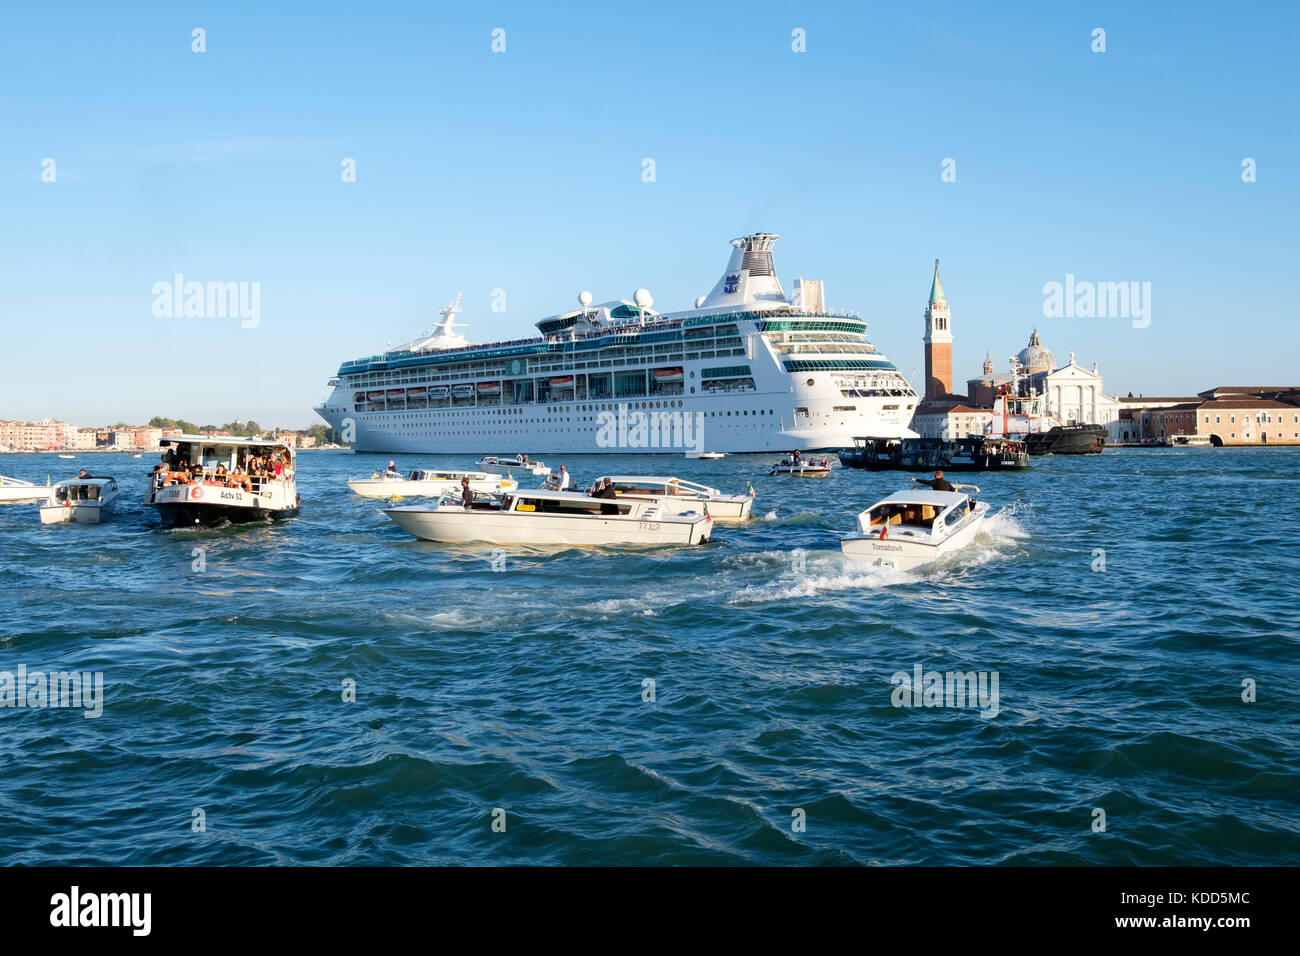 Congestione nella laguna veneta come la nave da crociera Royal Caribbean, 'Rhapsody dei mari' fa il suo modo di passare San Giorgio maggiore. Venezia, Ital Foto Stock